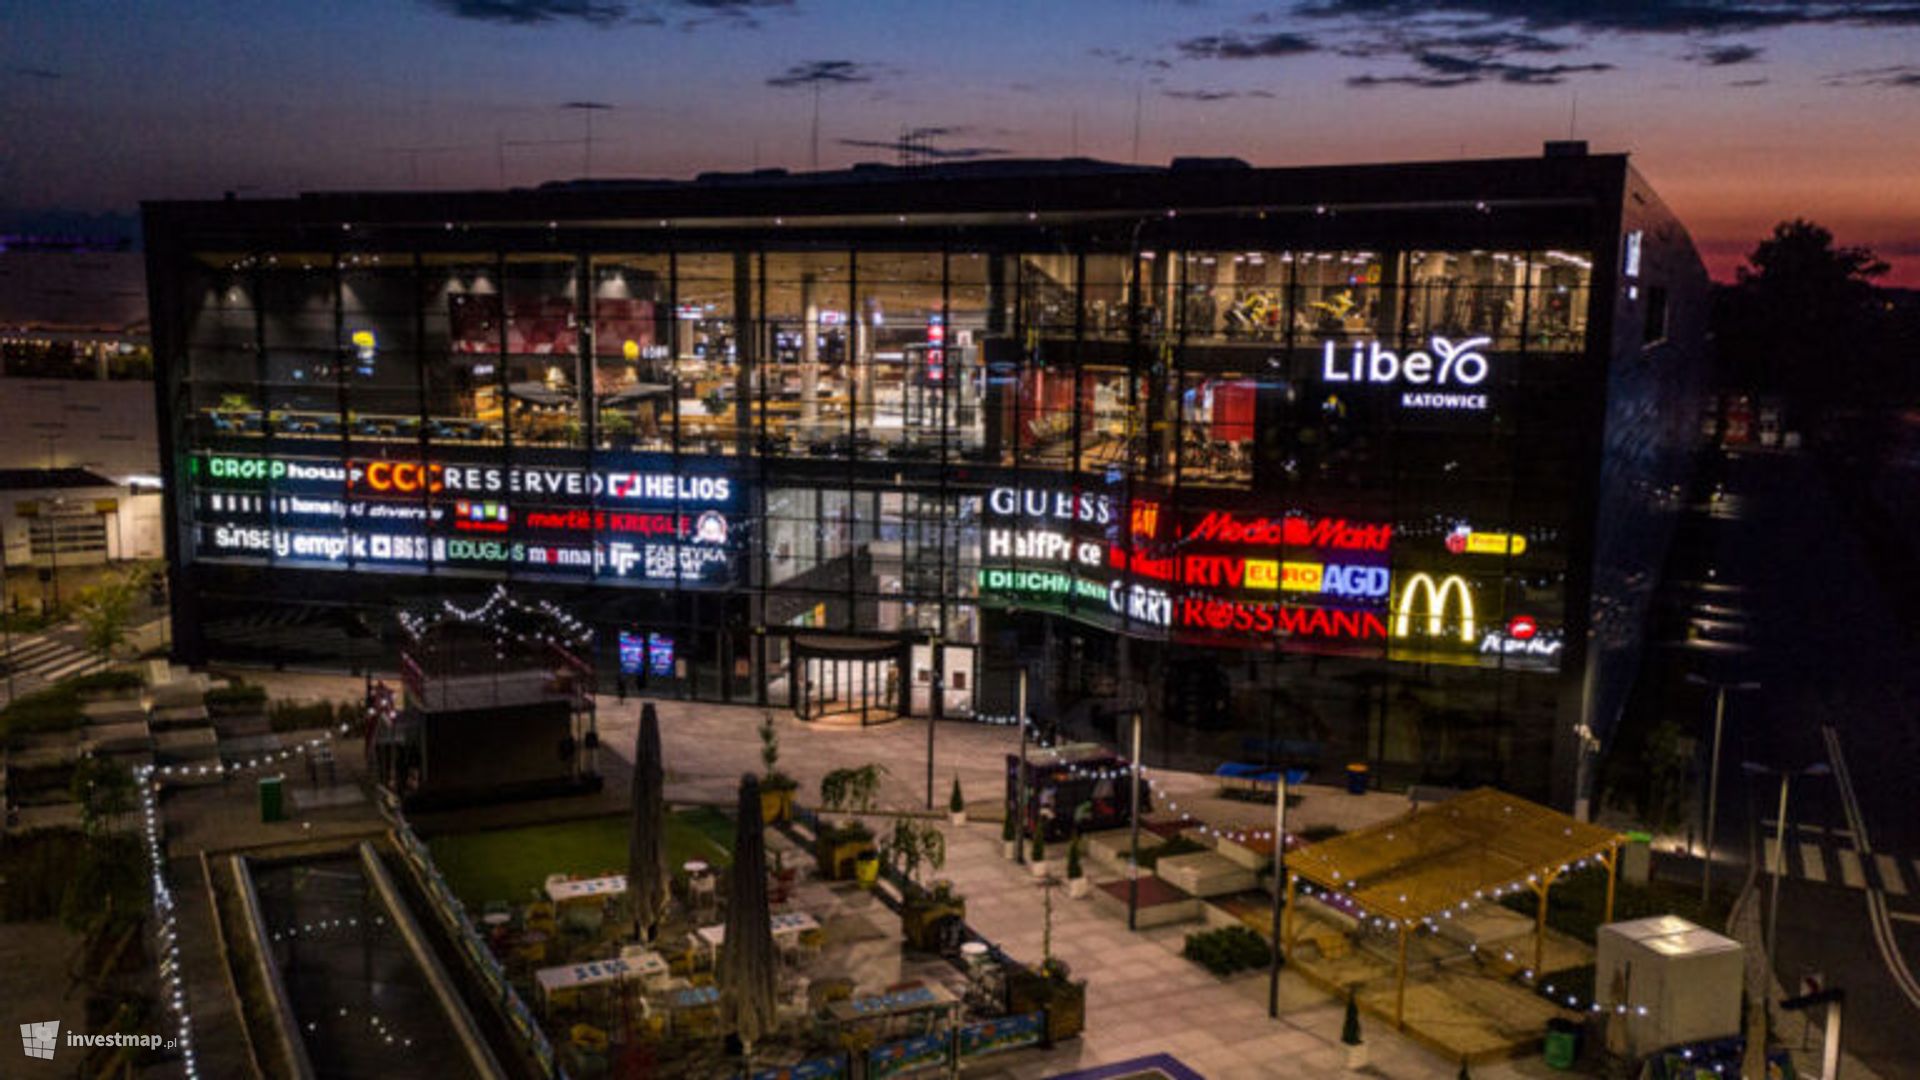 Galeria handlowa Libero Katowice poszerza swoją ofertę zakupową